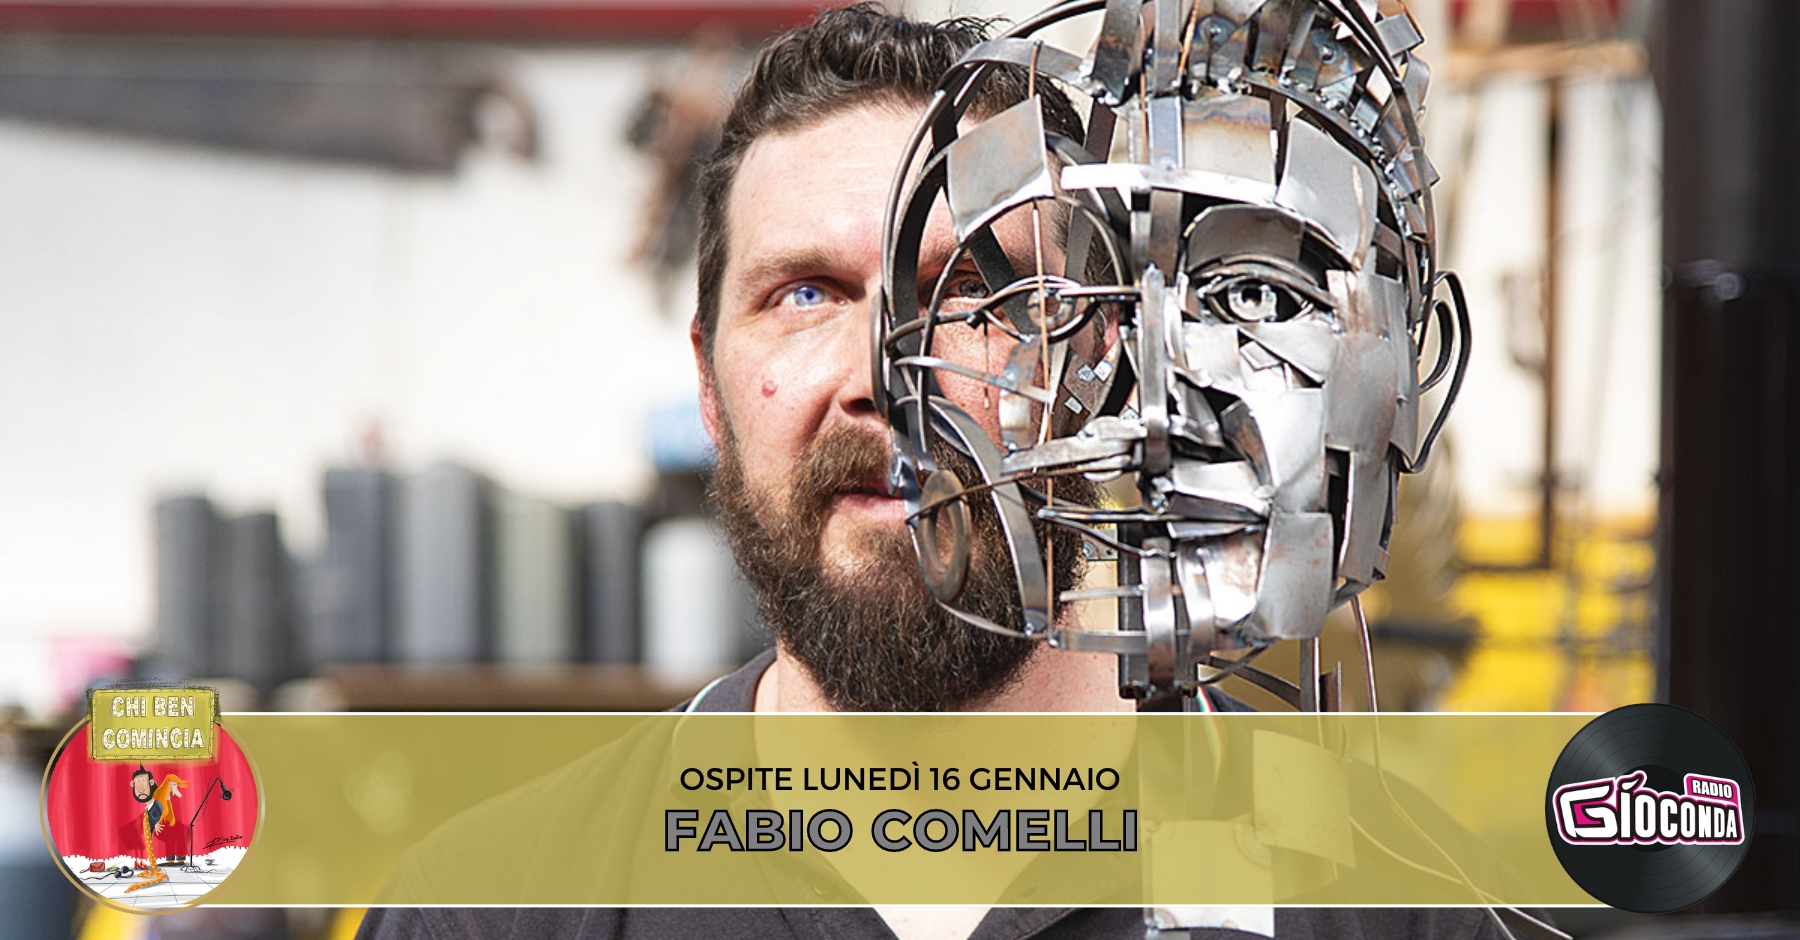 Fabio Comelli giovane artista, figlio d’arte, che interpreta in chiave moderna l’antico mestiere del fabbro,è l'ospite della nuova puntata di "Chi ben comincia" in onda lunedì 16 gennaio alle 18.00.